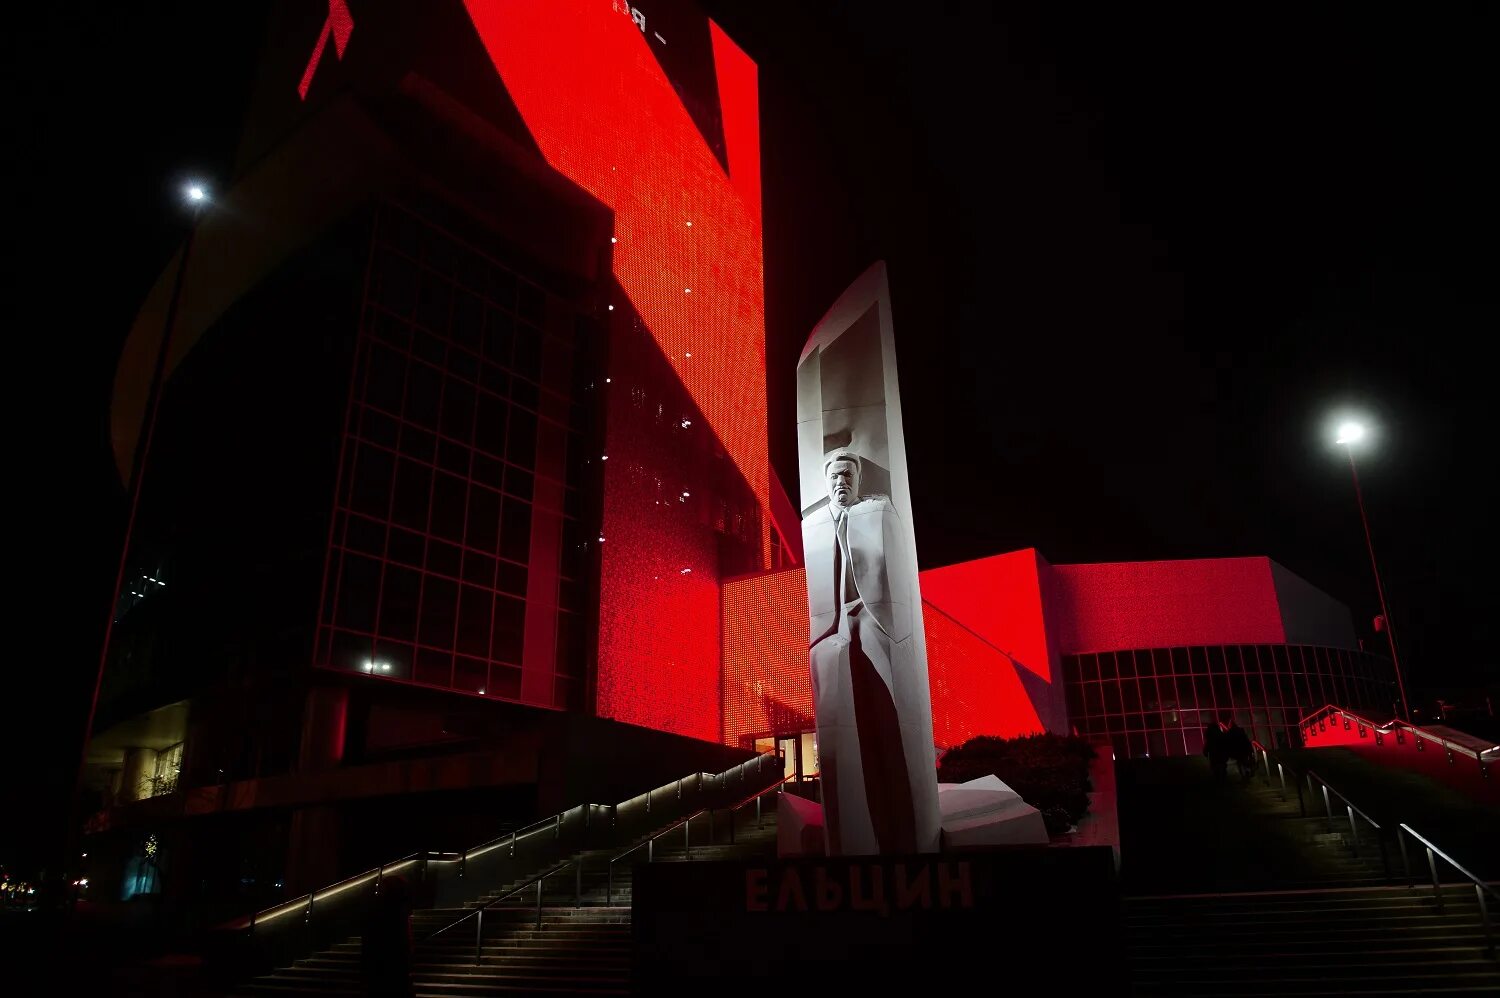 Ельцин-центр Екатеринбург. Ельцин центр зажег свечи в память о погибших. Ельцин центр ночью. Ельцин центр зажег свечи. Траур в екатеринбурге